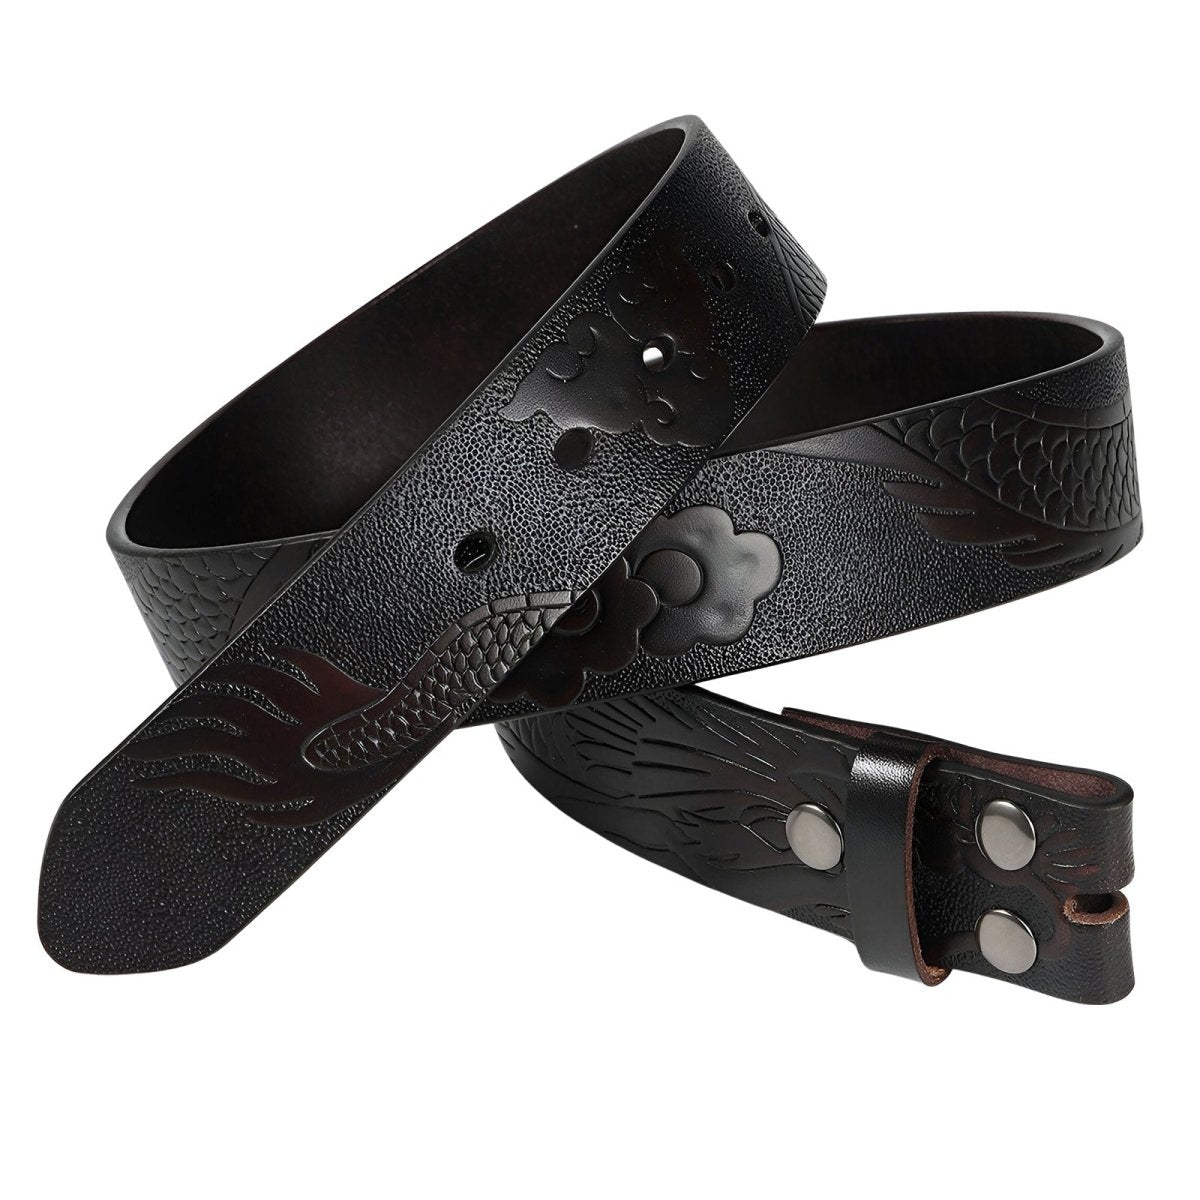 Lanière de ceinture 3.8 cm en cuir, au motif dragon, pour boucles interchangeables, modèle Hyman - La Boutique de la Ceinture